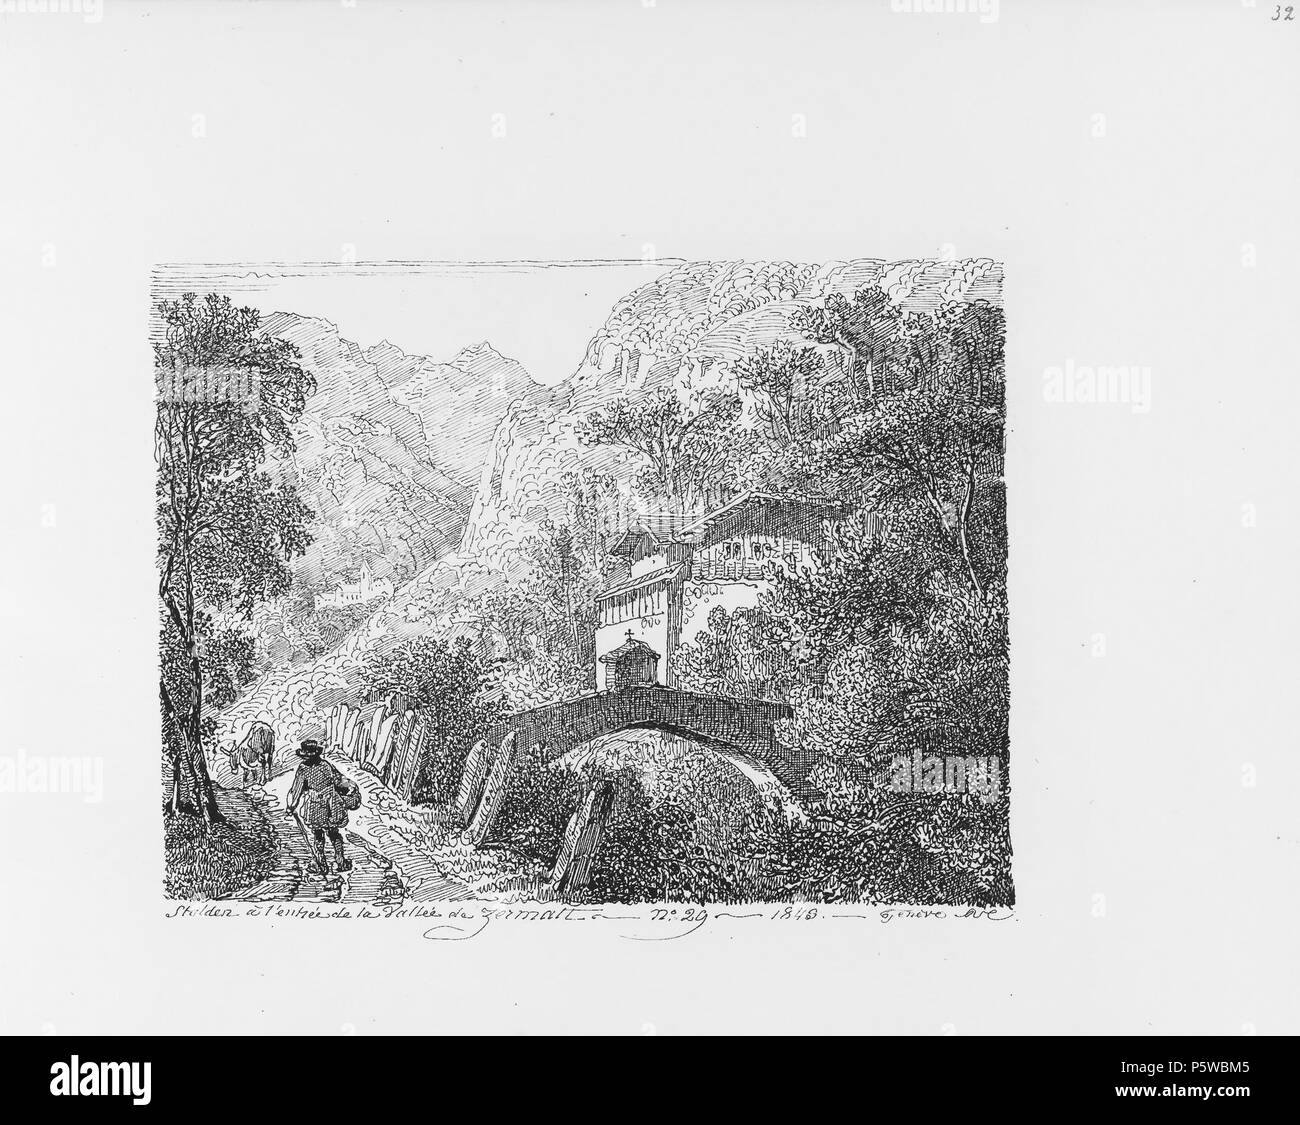 322 CH-NB-Voyage Autour du Mont-Blanc dans les vallées d'Hérens de Zermatt et au Grimsel 1843 - nbdig -19161-031 Stockfoto